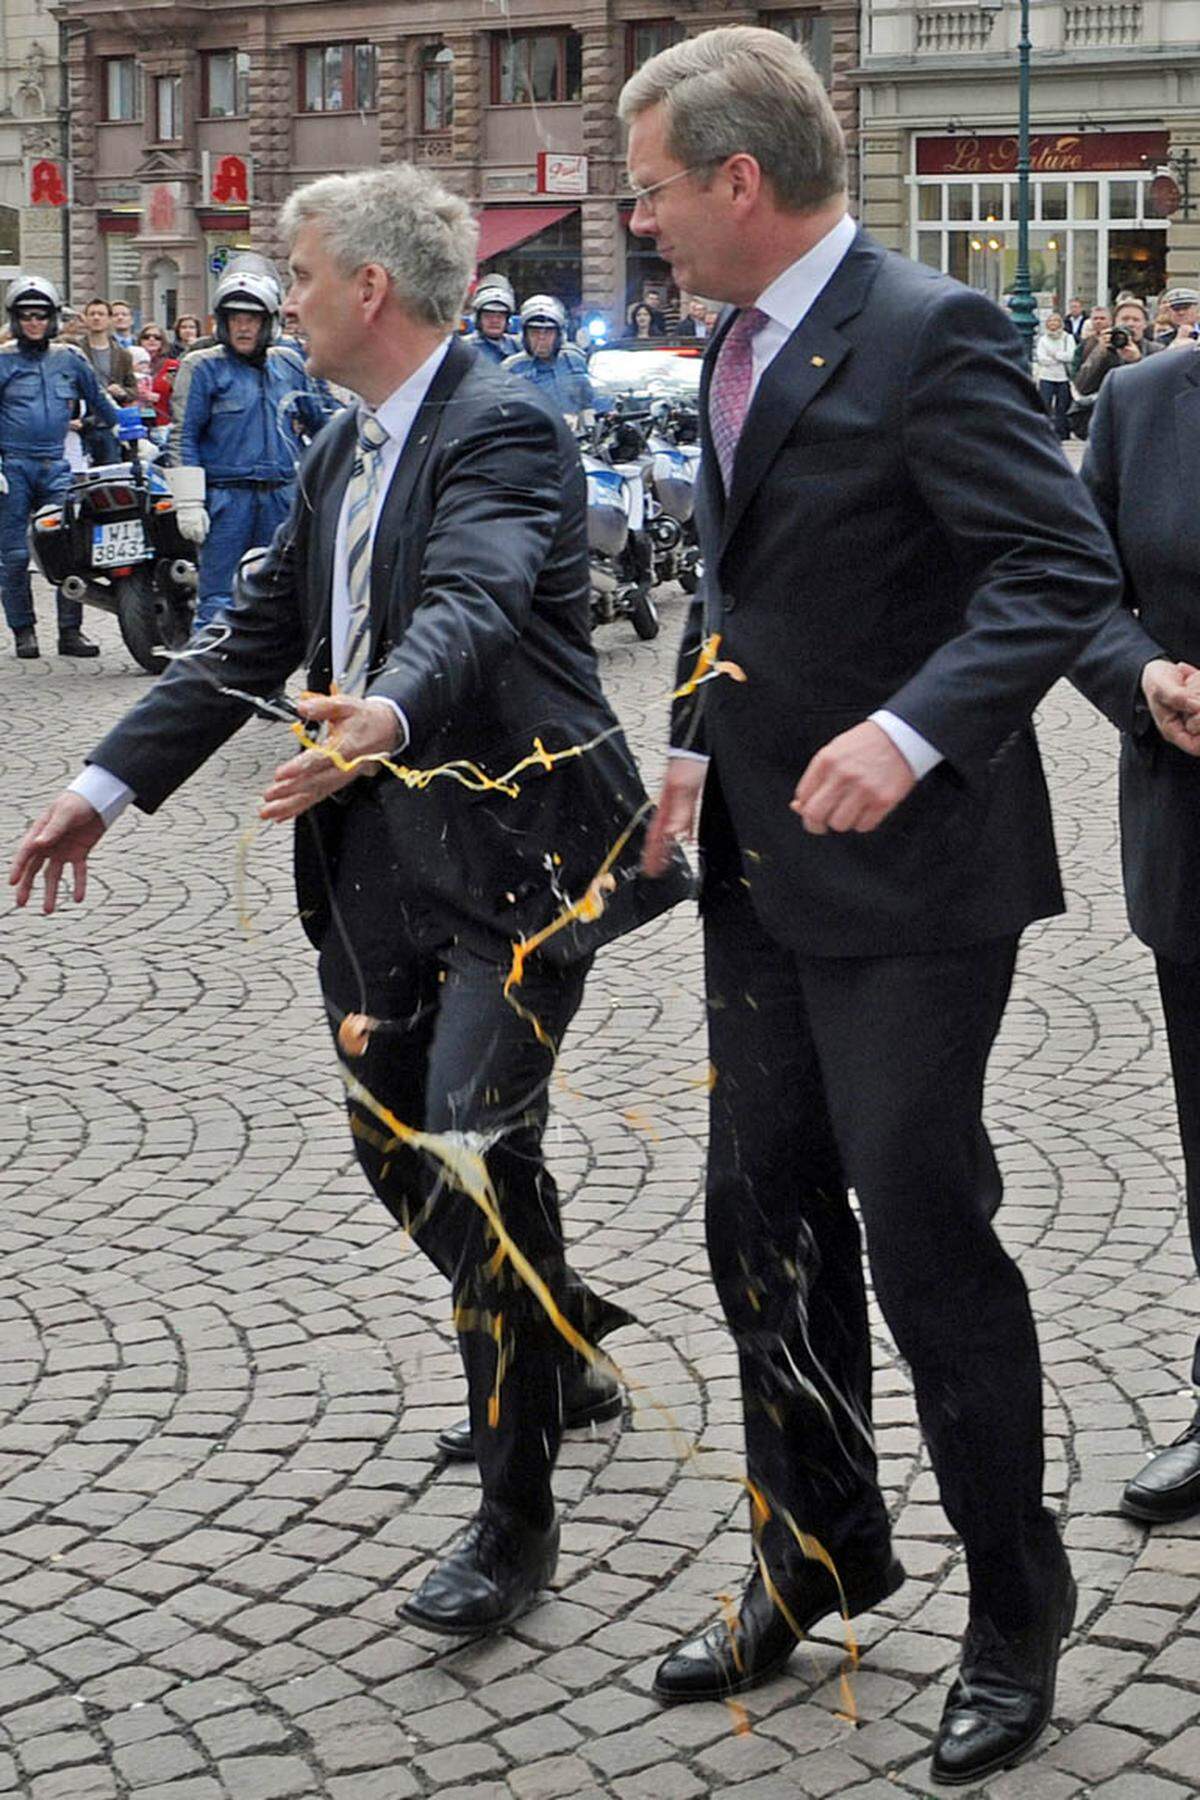 Der deutsche Bundespräsident Christian Wulff wurde im April 2011 Opfer eines Eierwerfers: Die Wurfaktion ereignete sich vor dem Rathaus in Wiesbaden. Gleich mehrere rohe Eier landeten auf dem Sakko des Politikers.